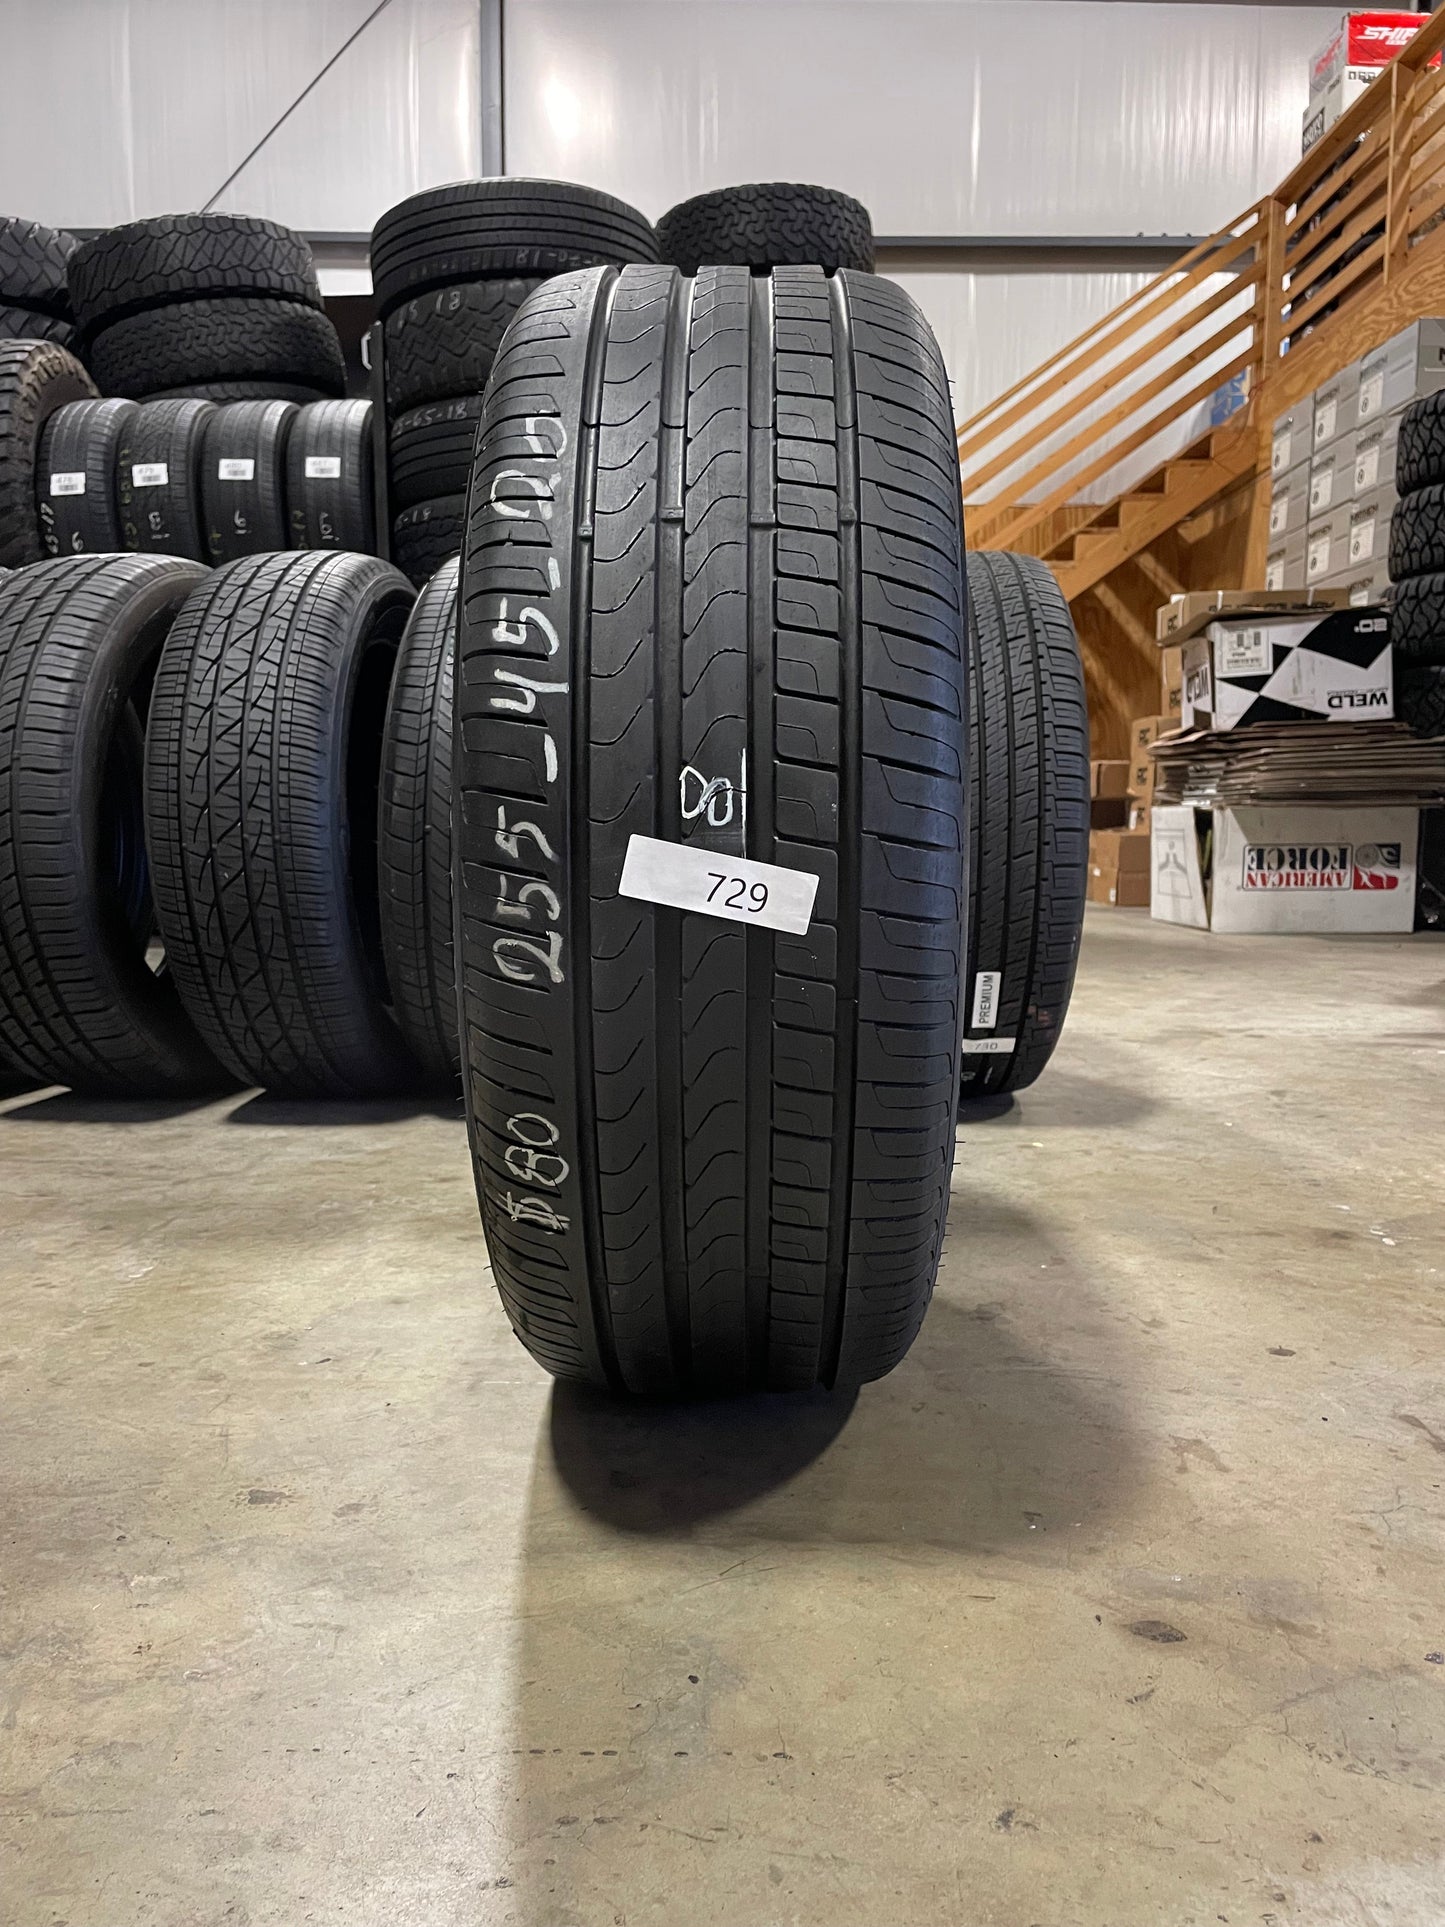 SINGLE 245/45R20 Pirelli Scorpion Verde Runflat 101 W XL - Premium Used Tires